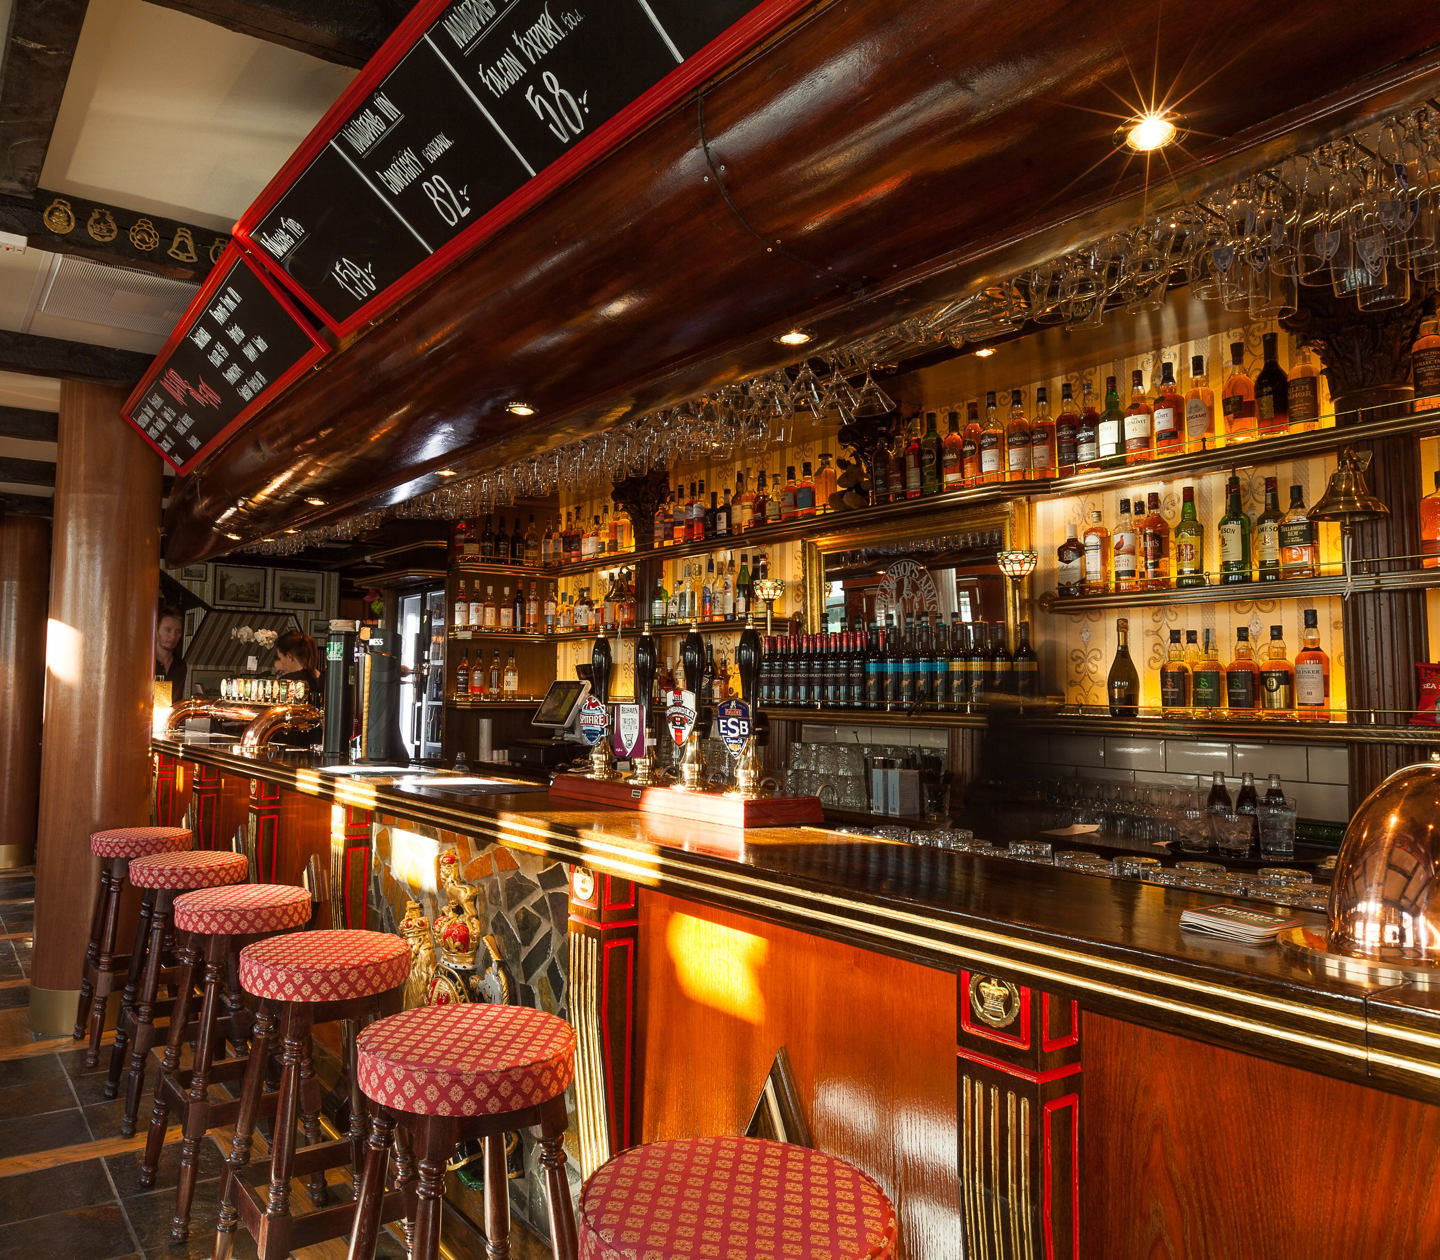 Klassisk engelsk pubmiljö med bar, mycket flaskor och barstolar